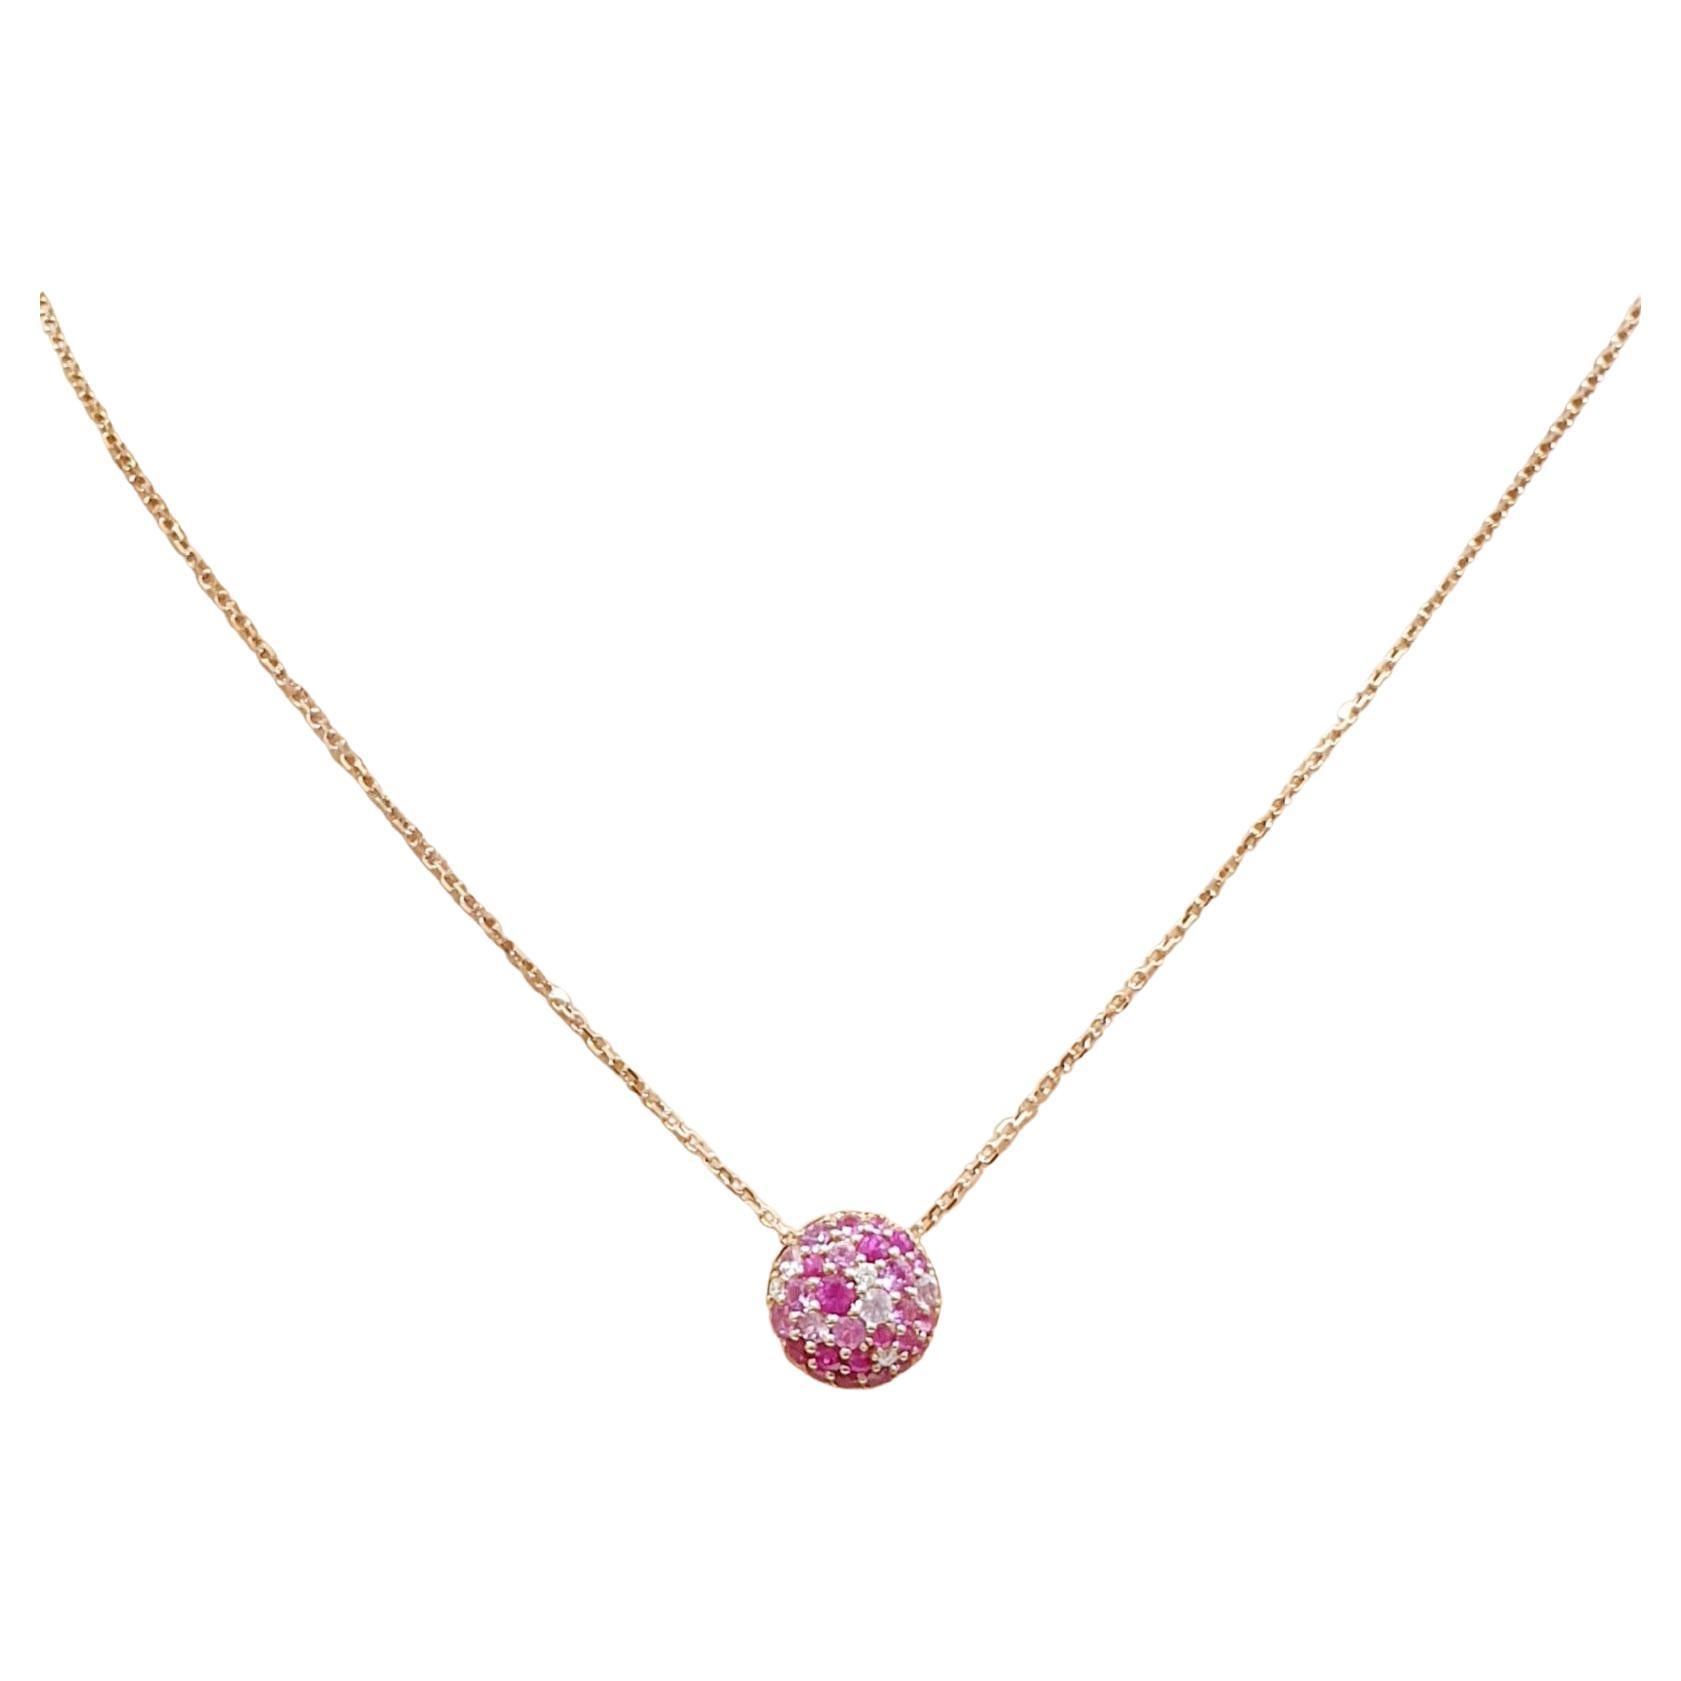  Chaîne en or rose 18 carats avec pendentif pavé de rubis et de diamants